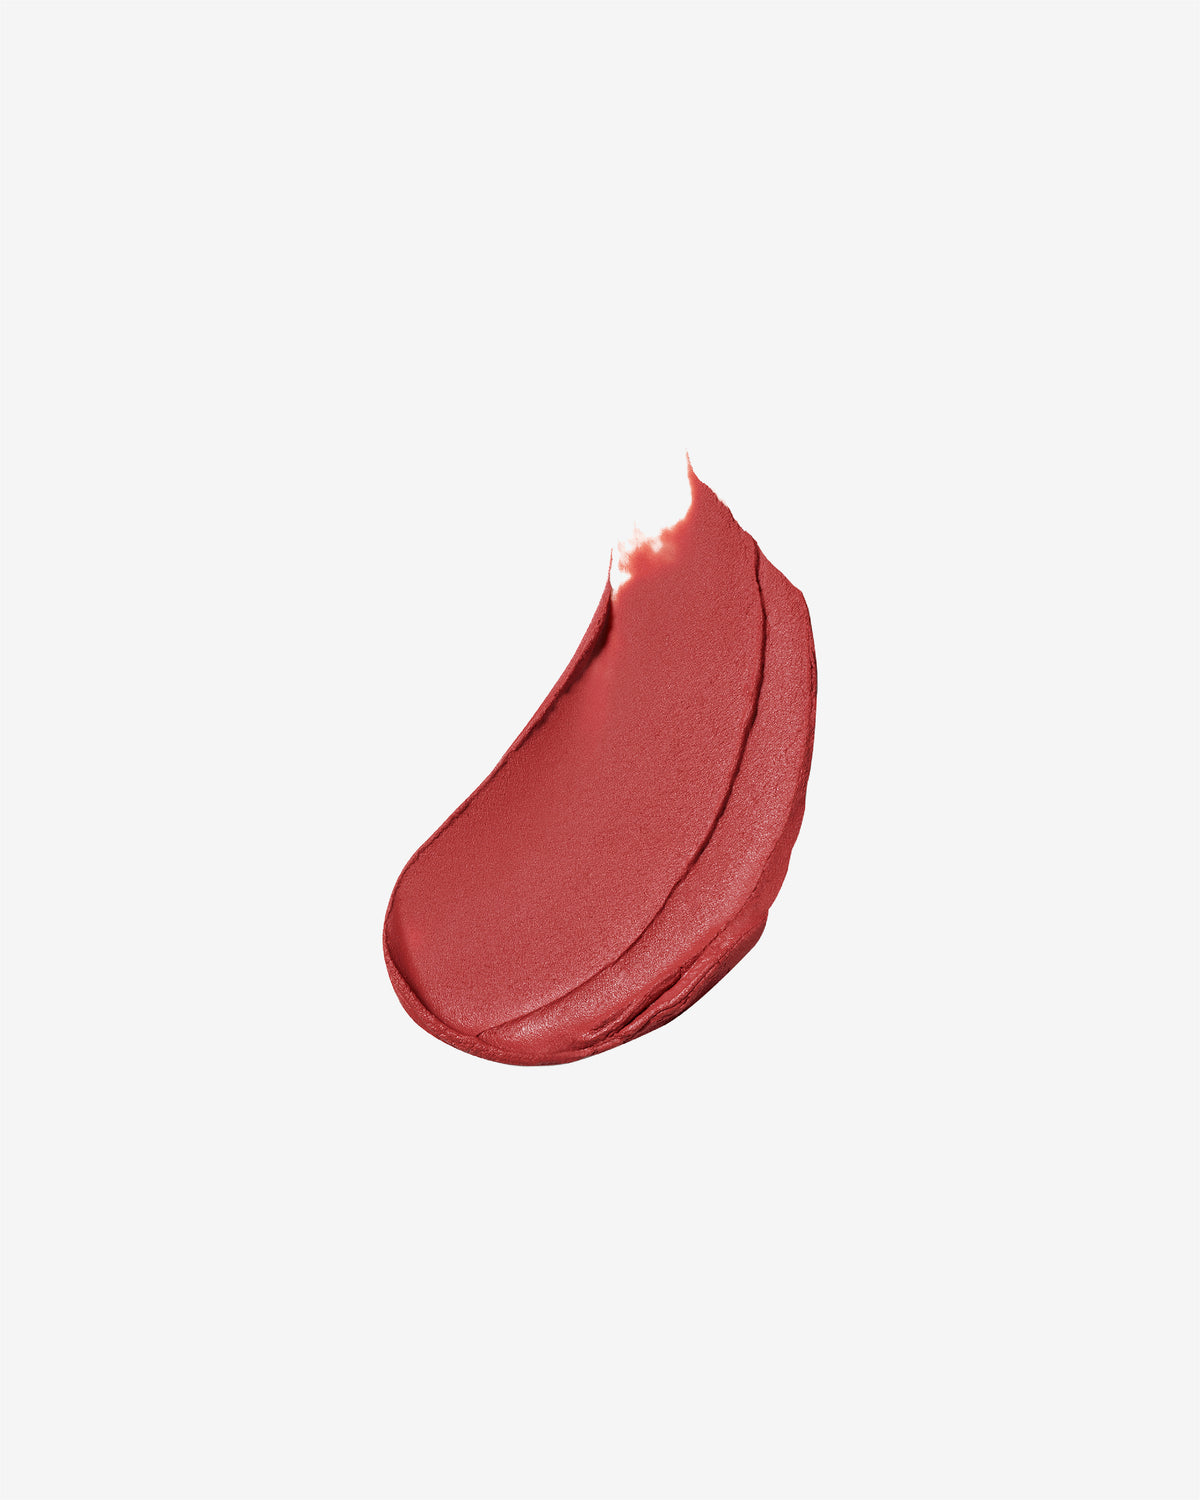 Pure Colour Matte Lipstick 3.5g